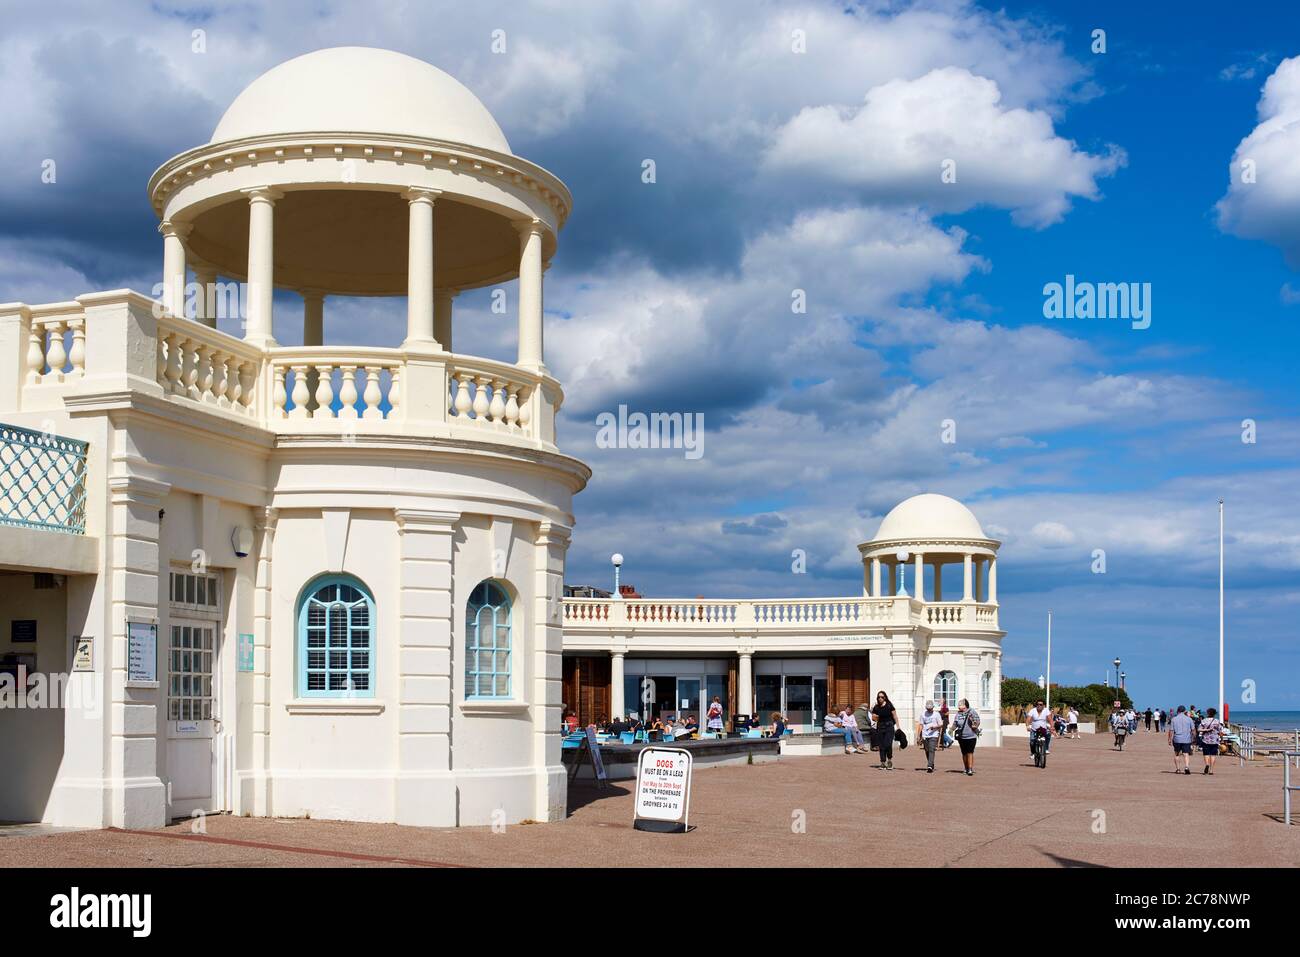 Die Strandpromenade von Bexhill-on-Sea, East Sussex, Großbritannien, mit Kuppeln und Fußgängern an der Promenade Stockfoto